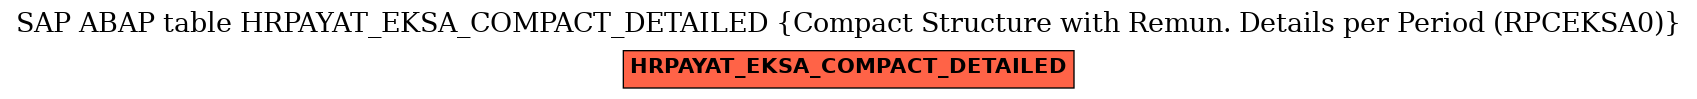 E-R Diagram for table HRPAYAT_EKSA_COMPACT_DETAILED (Compact Structure with Remun. Details per Period (RPCEKSA0))